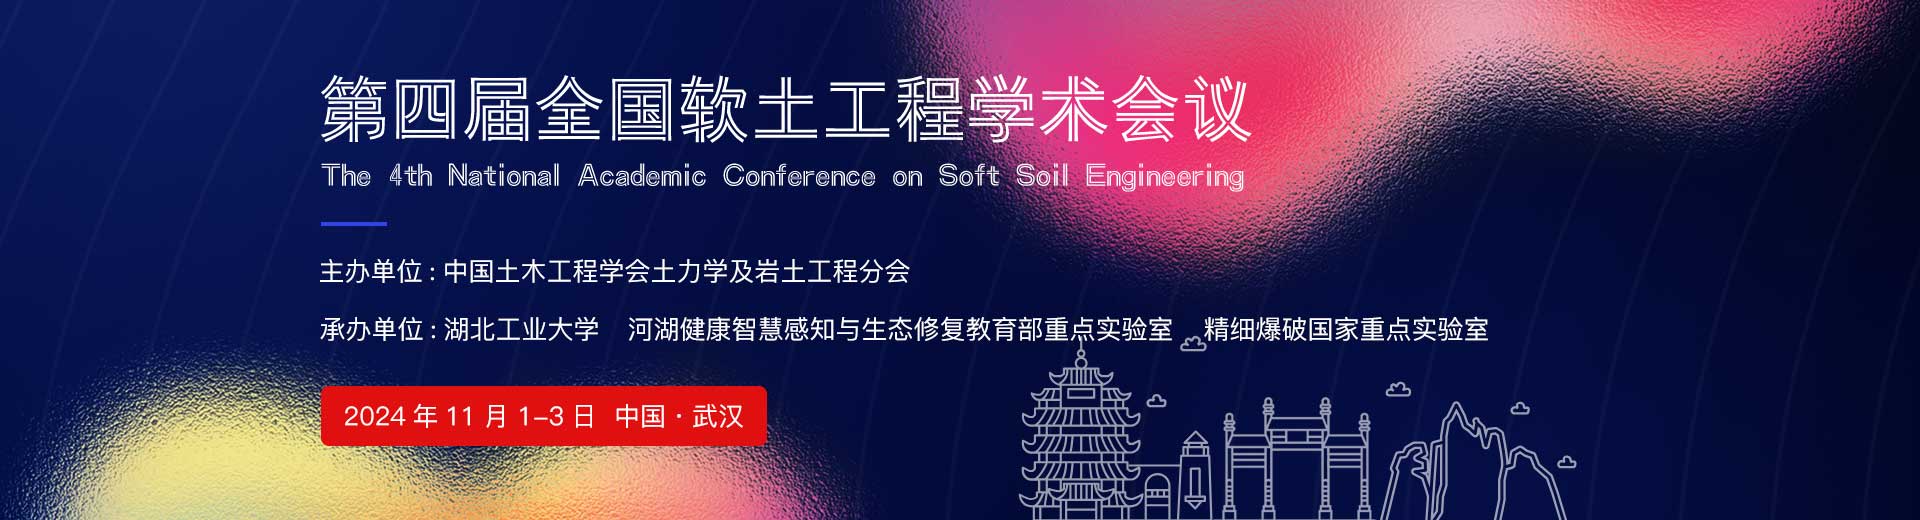 第四届全国软土工程学术会议